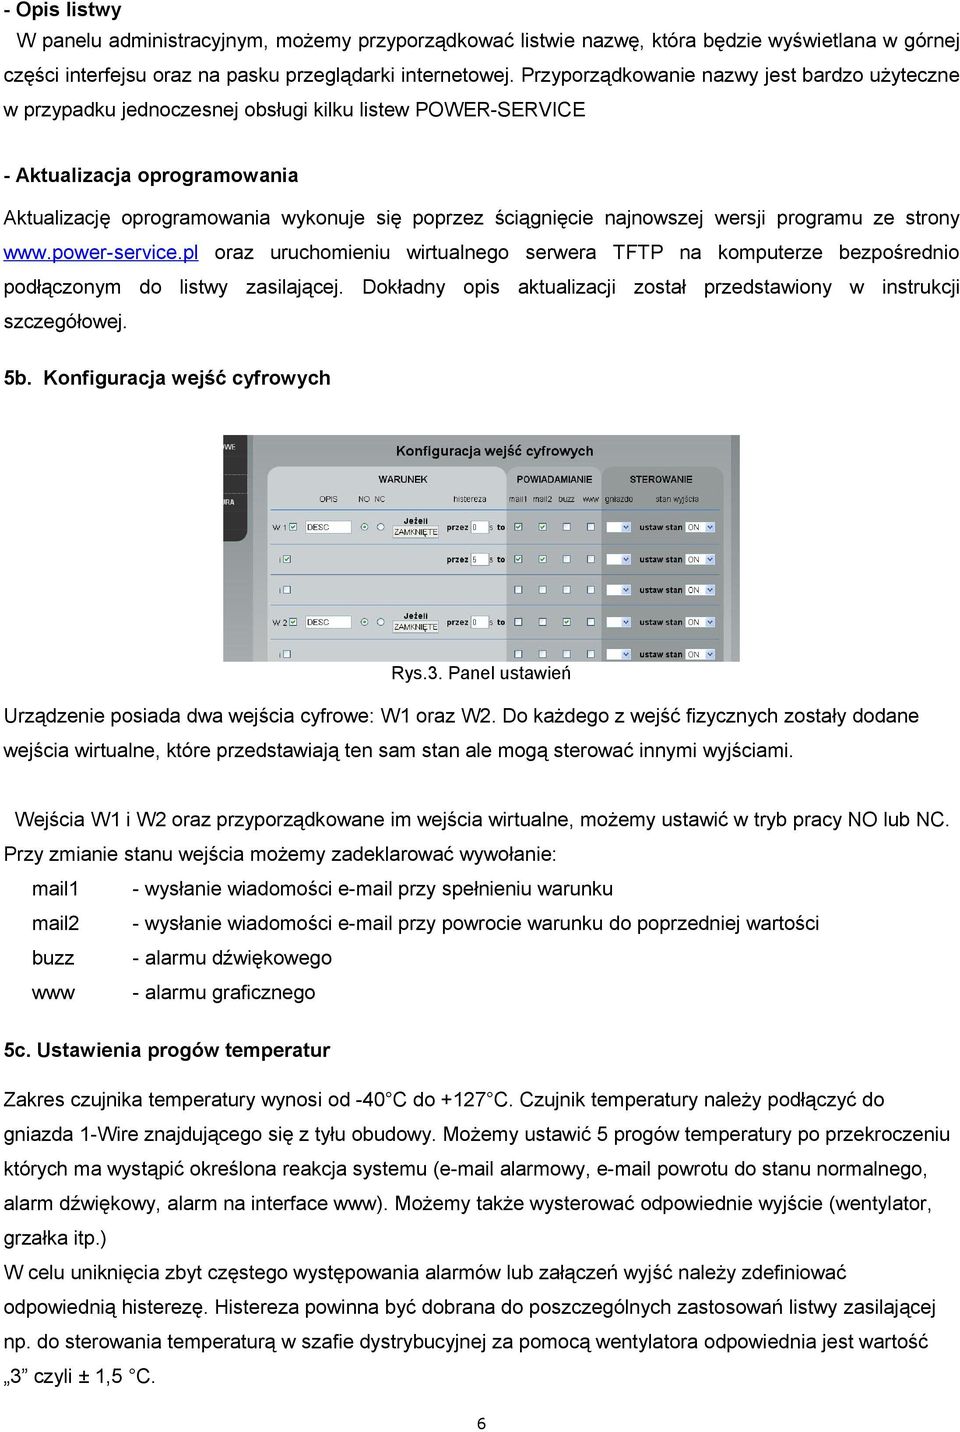 najnowszej wersji programu ze strony www.power-service.pl oraz uruchomieniu wirtualnego serwera TFTP na komputerze bezpośrednio podłączonym do listwy zasilającej.